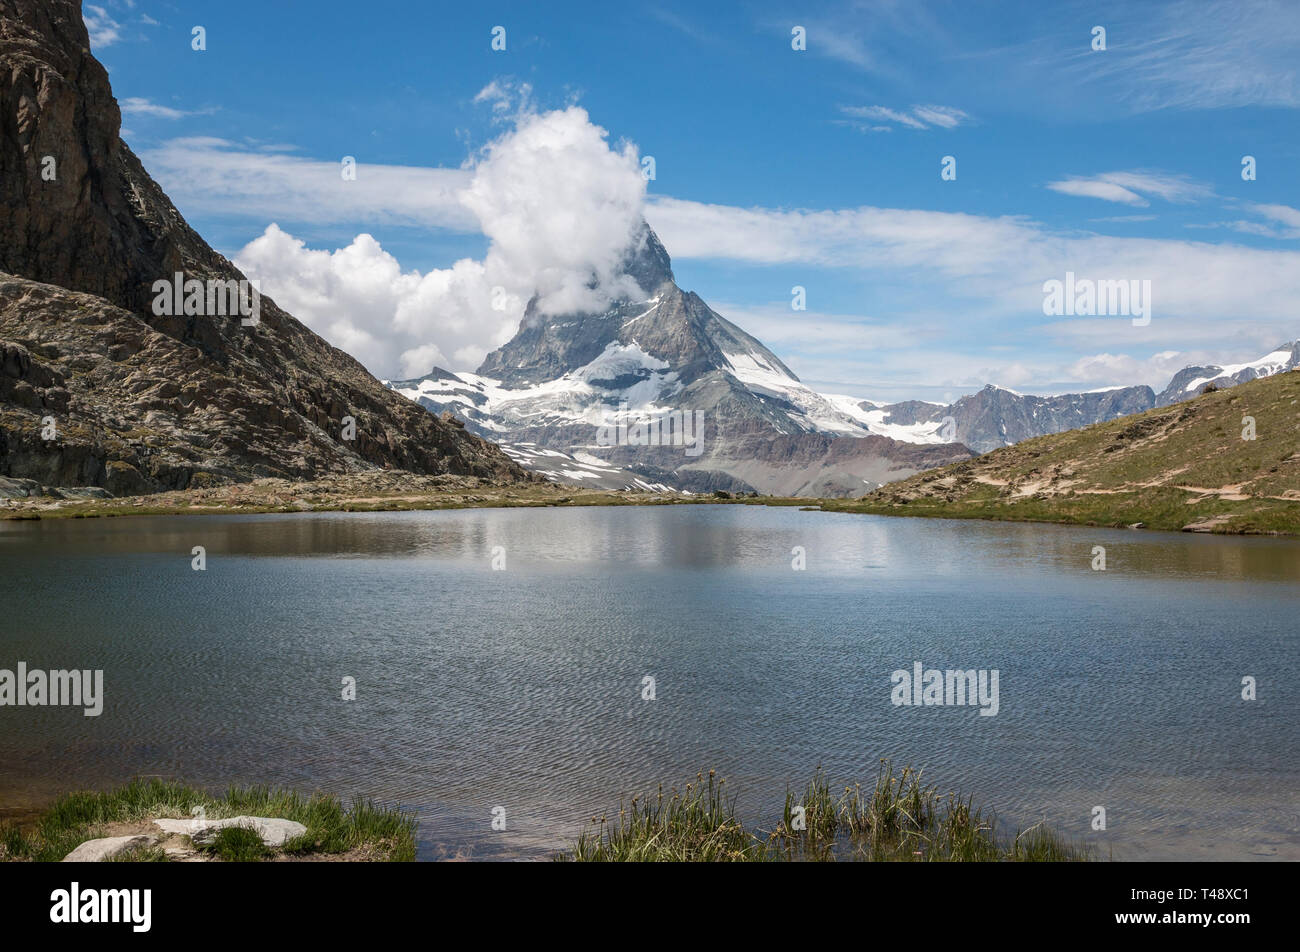 Gros plan sur le lac Riffelsee et le Mont Cervin, scènes dans le parc national de Zermatt, Suisse, Europe. Paysage d'été, soleil météo, de façon spectaculaire Banque D'Images